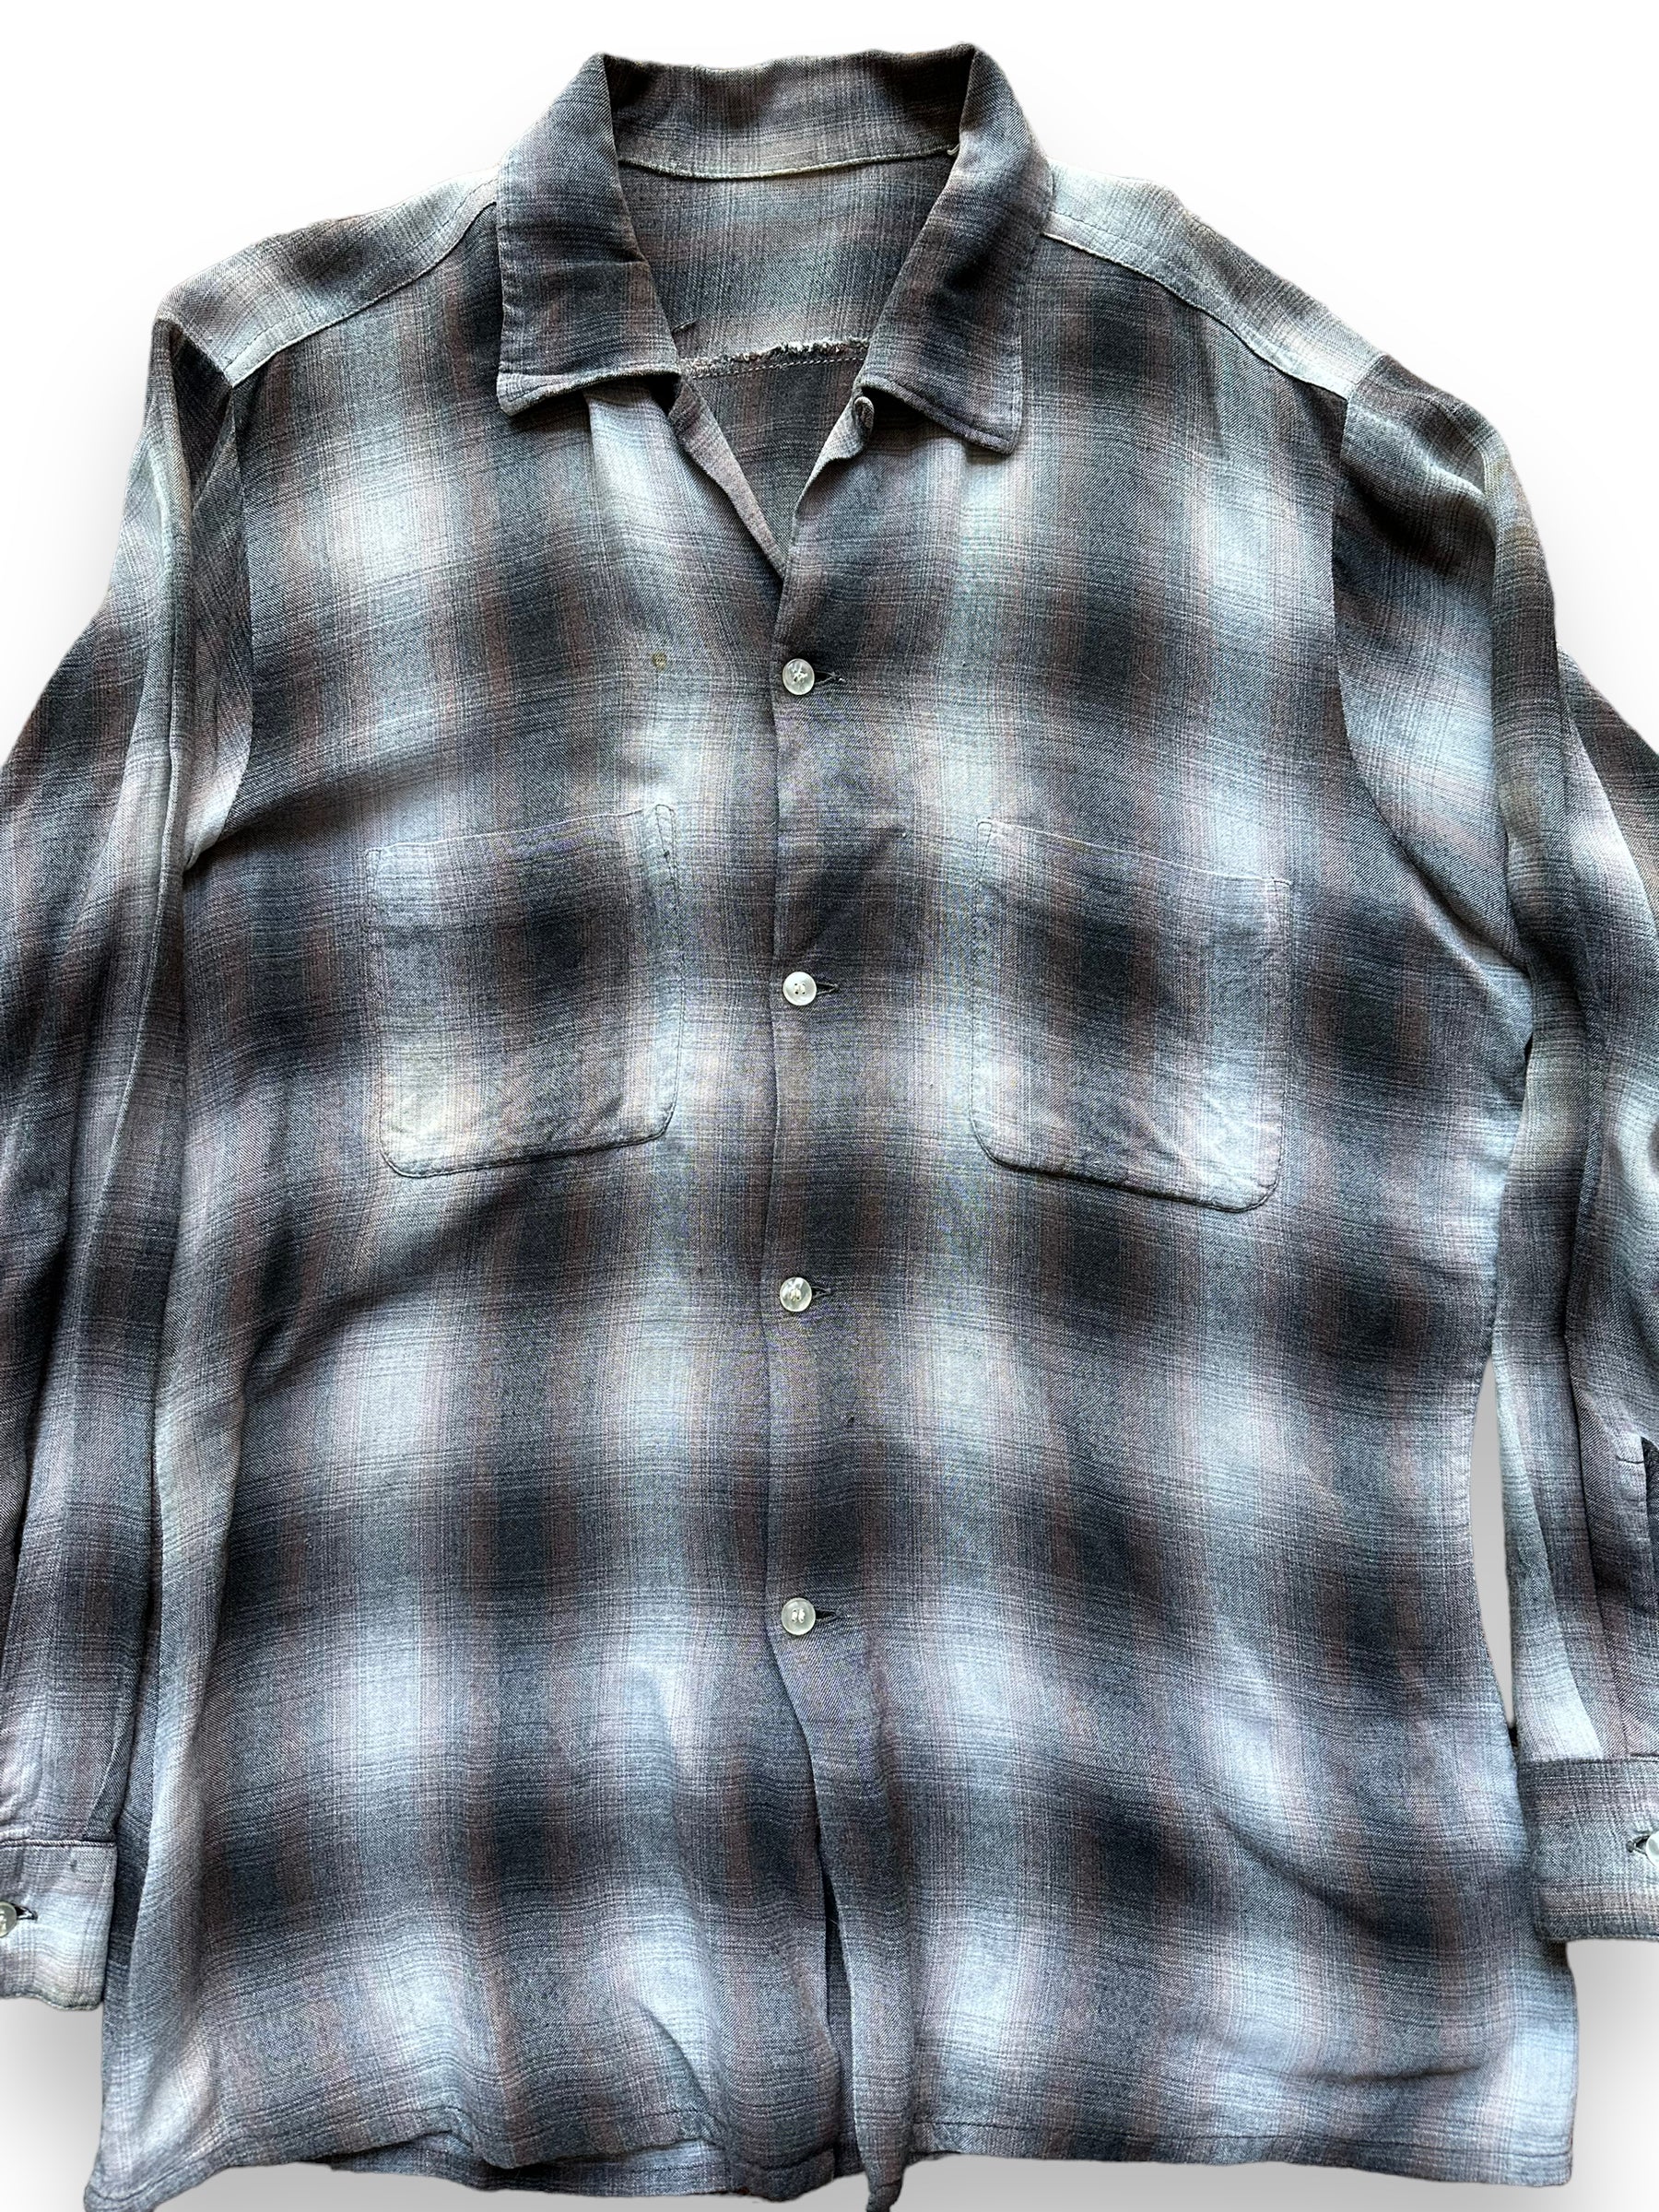 セール特価商品 70´s rayon woven shadow plaid shirt - トップス